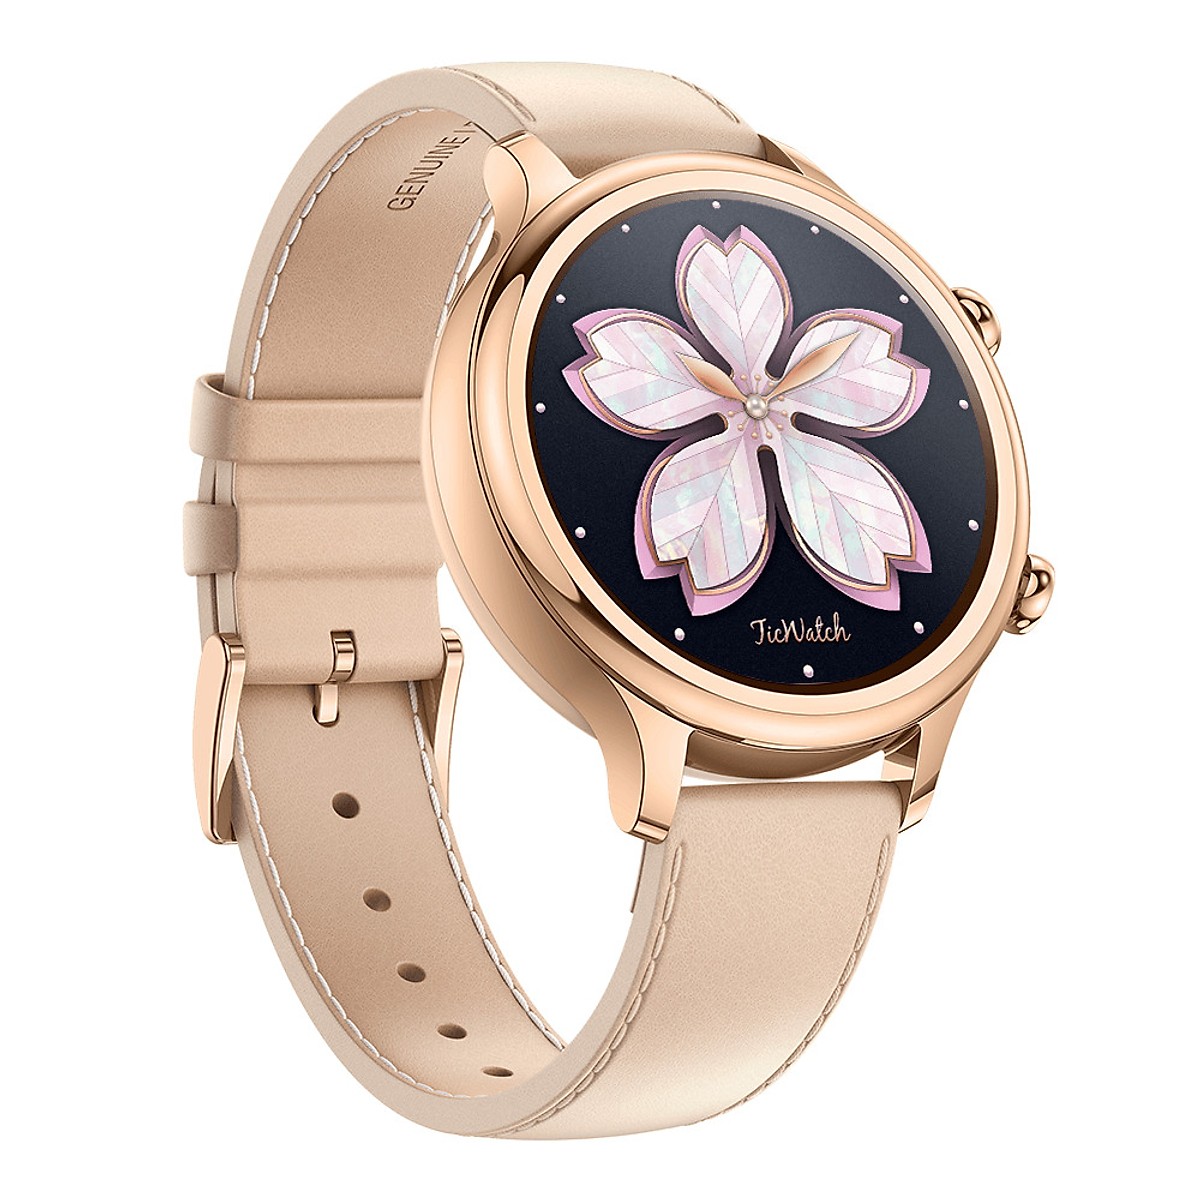 Đồng hồ thông minh Ticwatch C2 Rose Gold - Hàng chính hãng 100%